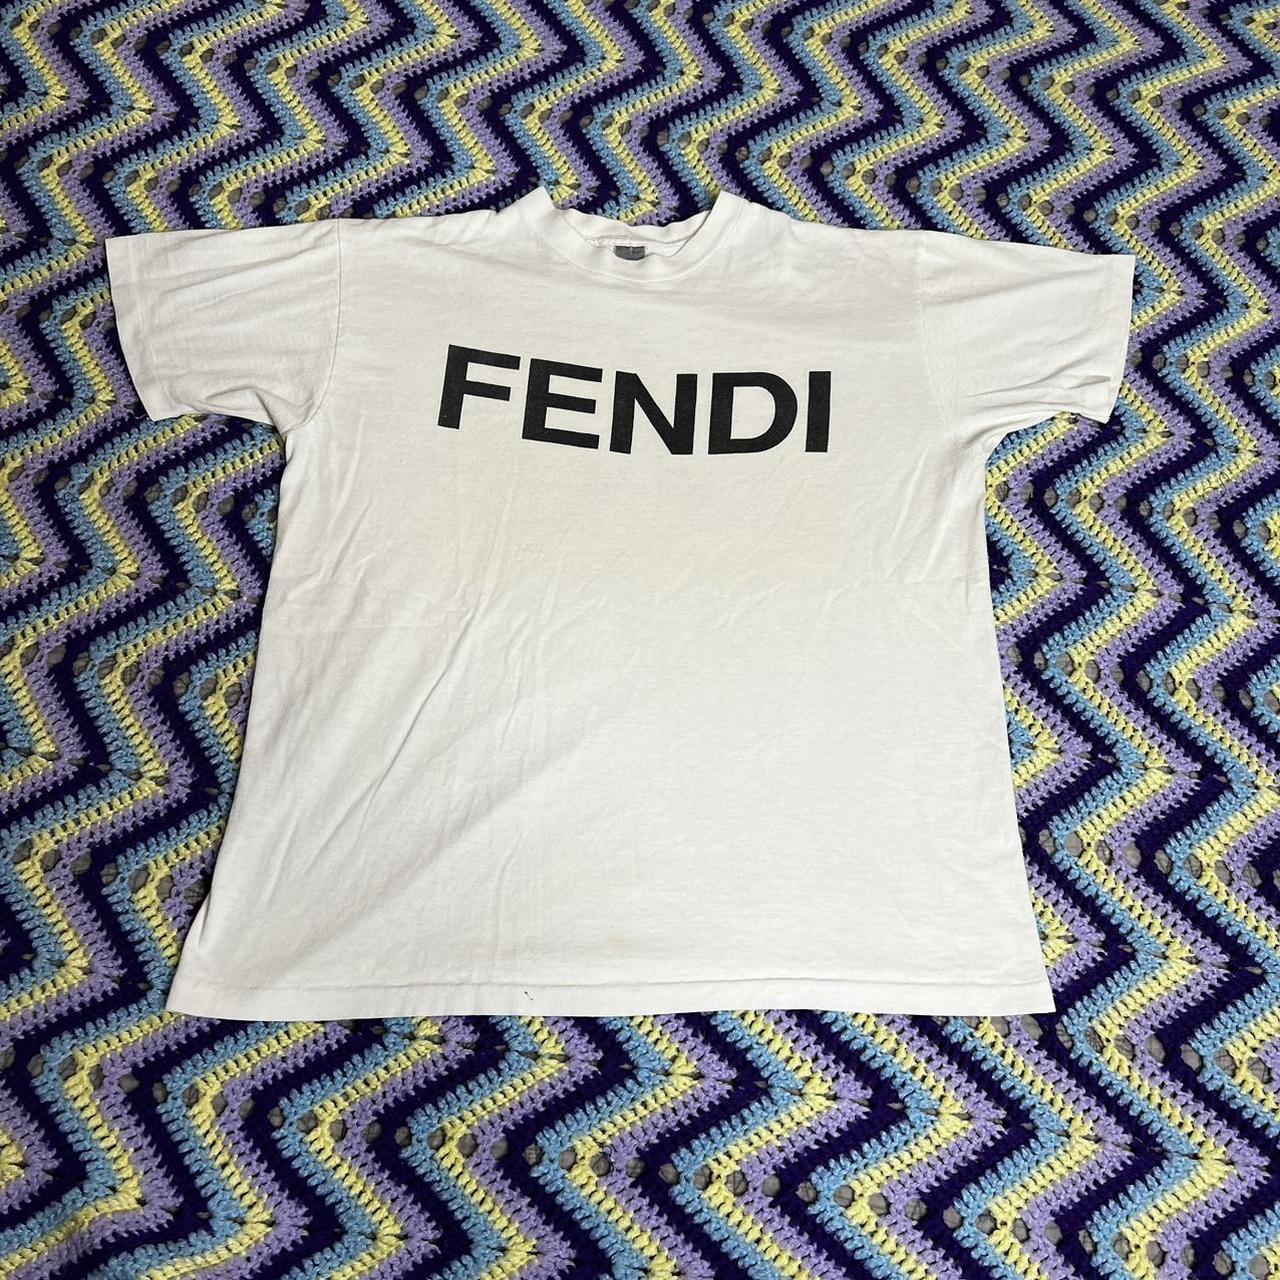 Fendi Men's White T-shirt